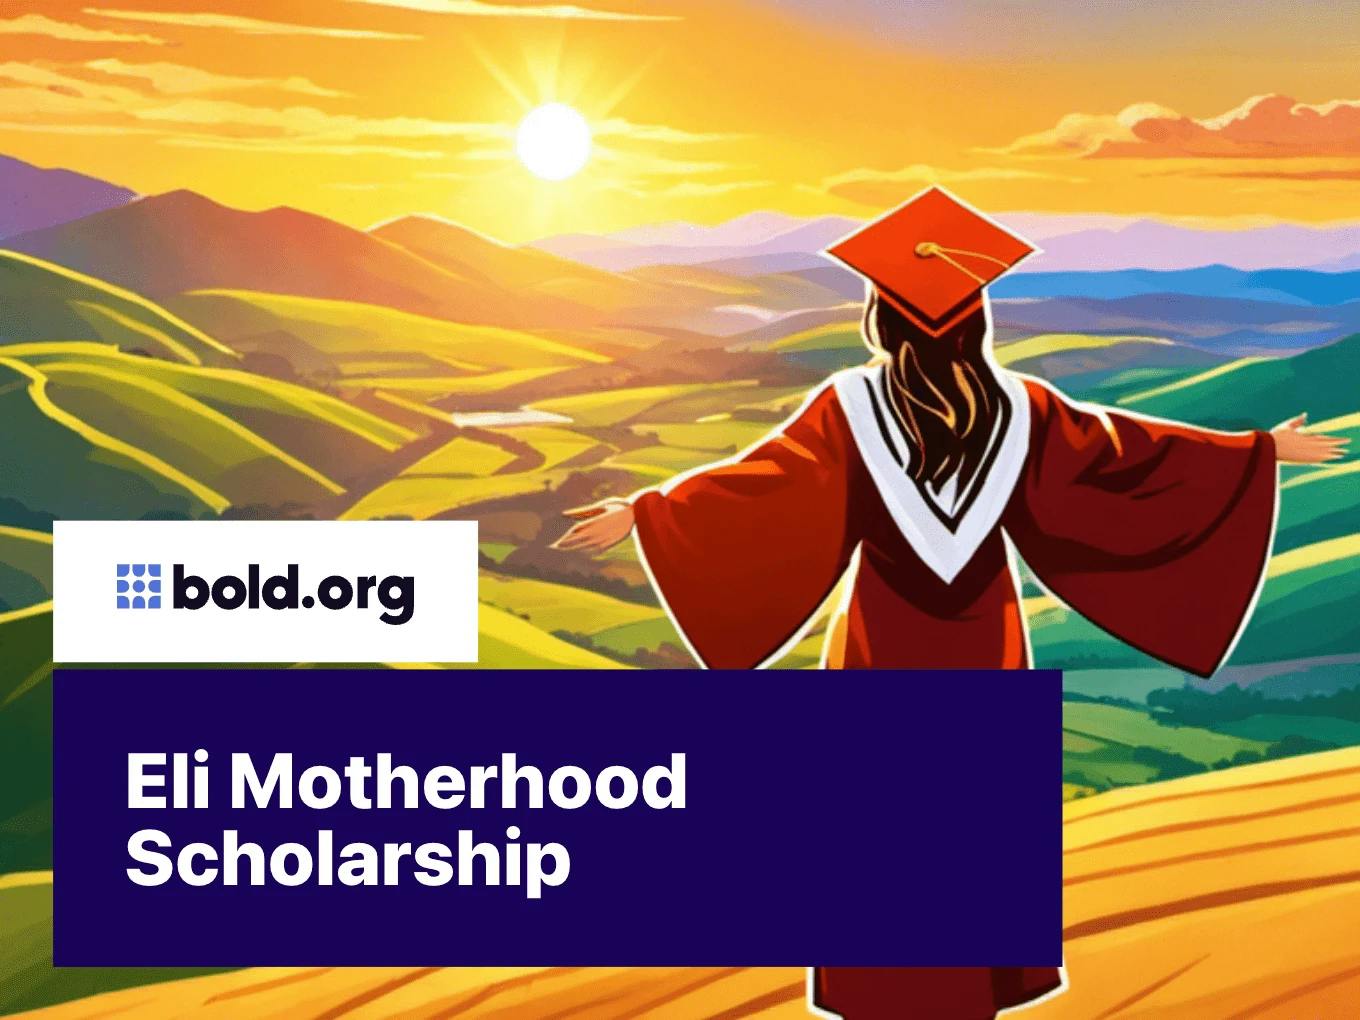 Eli Motherhood Scholarship